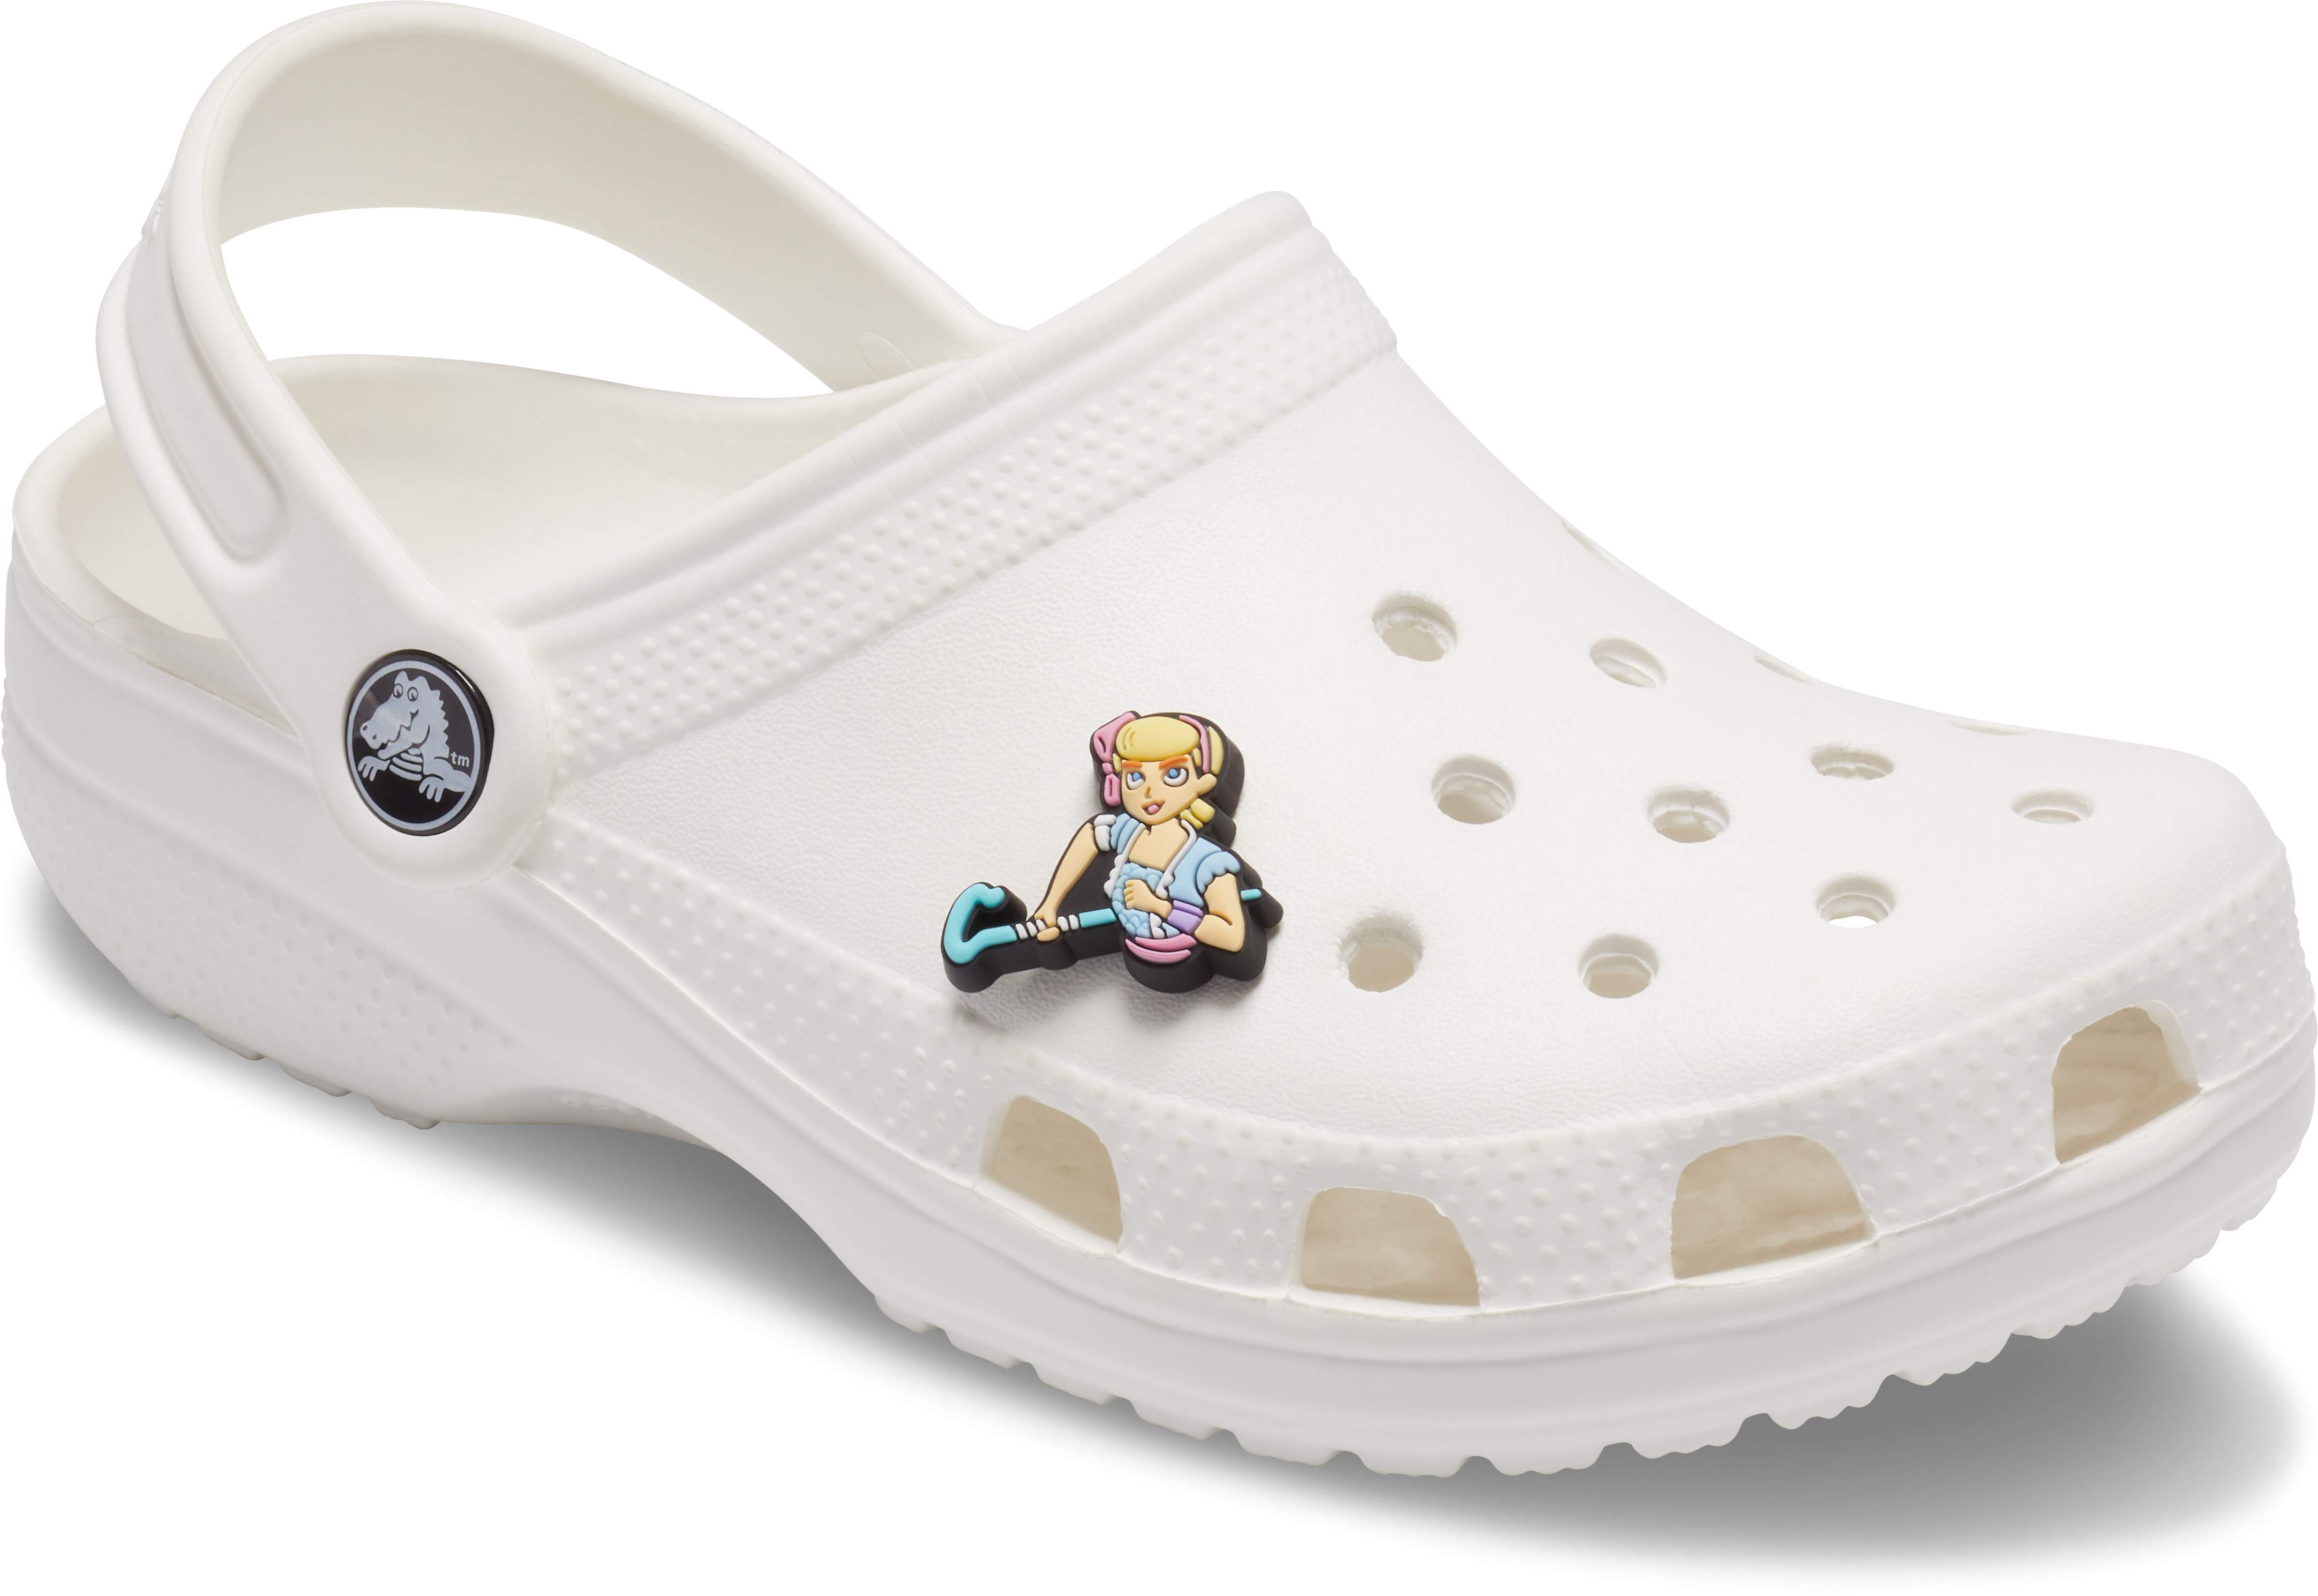 toy story crocs size 8